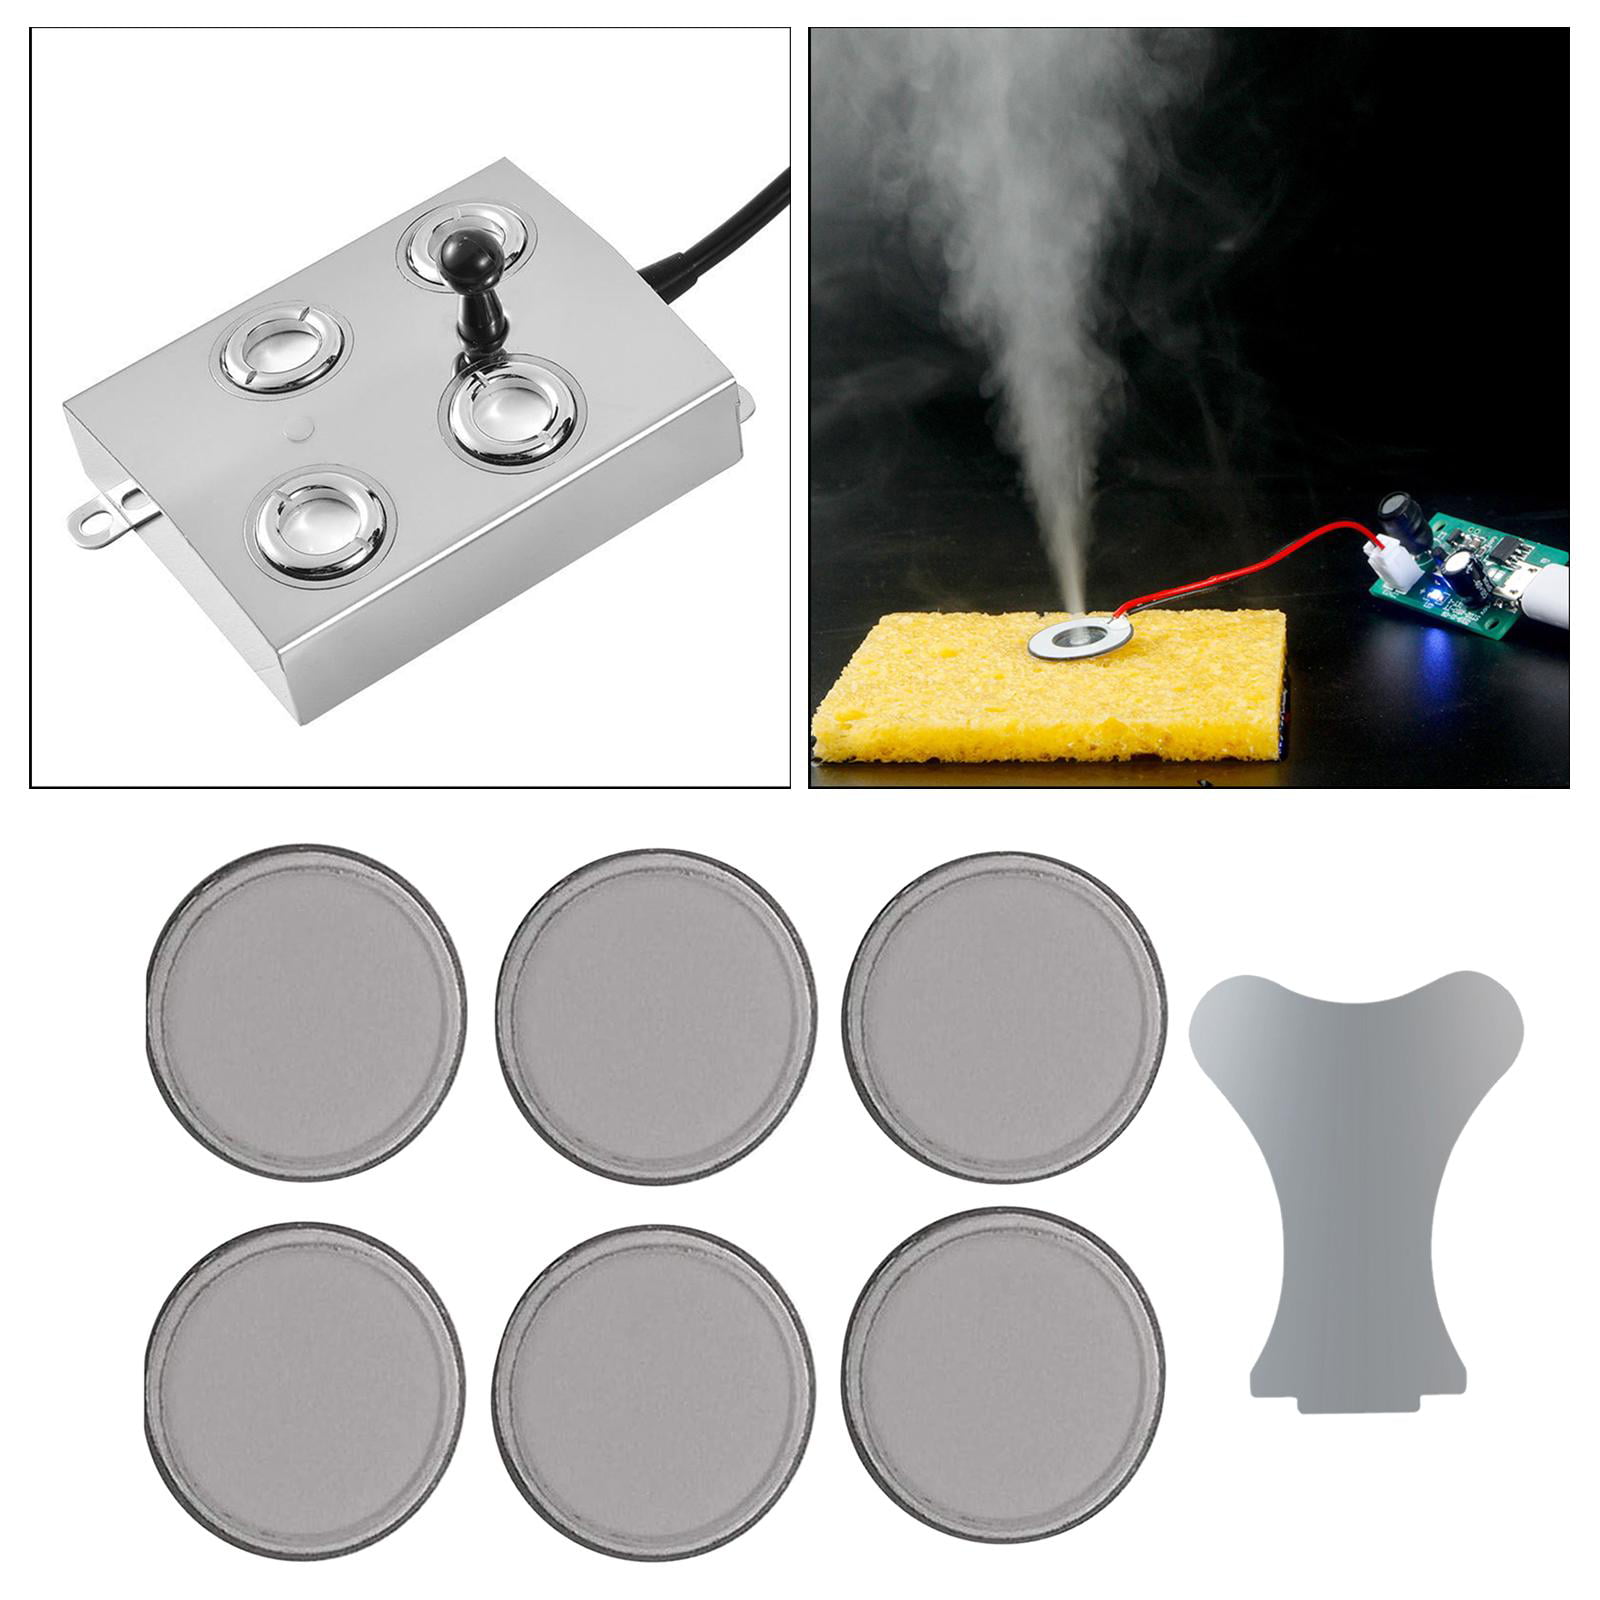 6 Pcs 20mm Ultrasonic Mist Maker Fogger Ceramics Discs for Humidifier Parts 